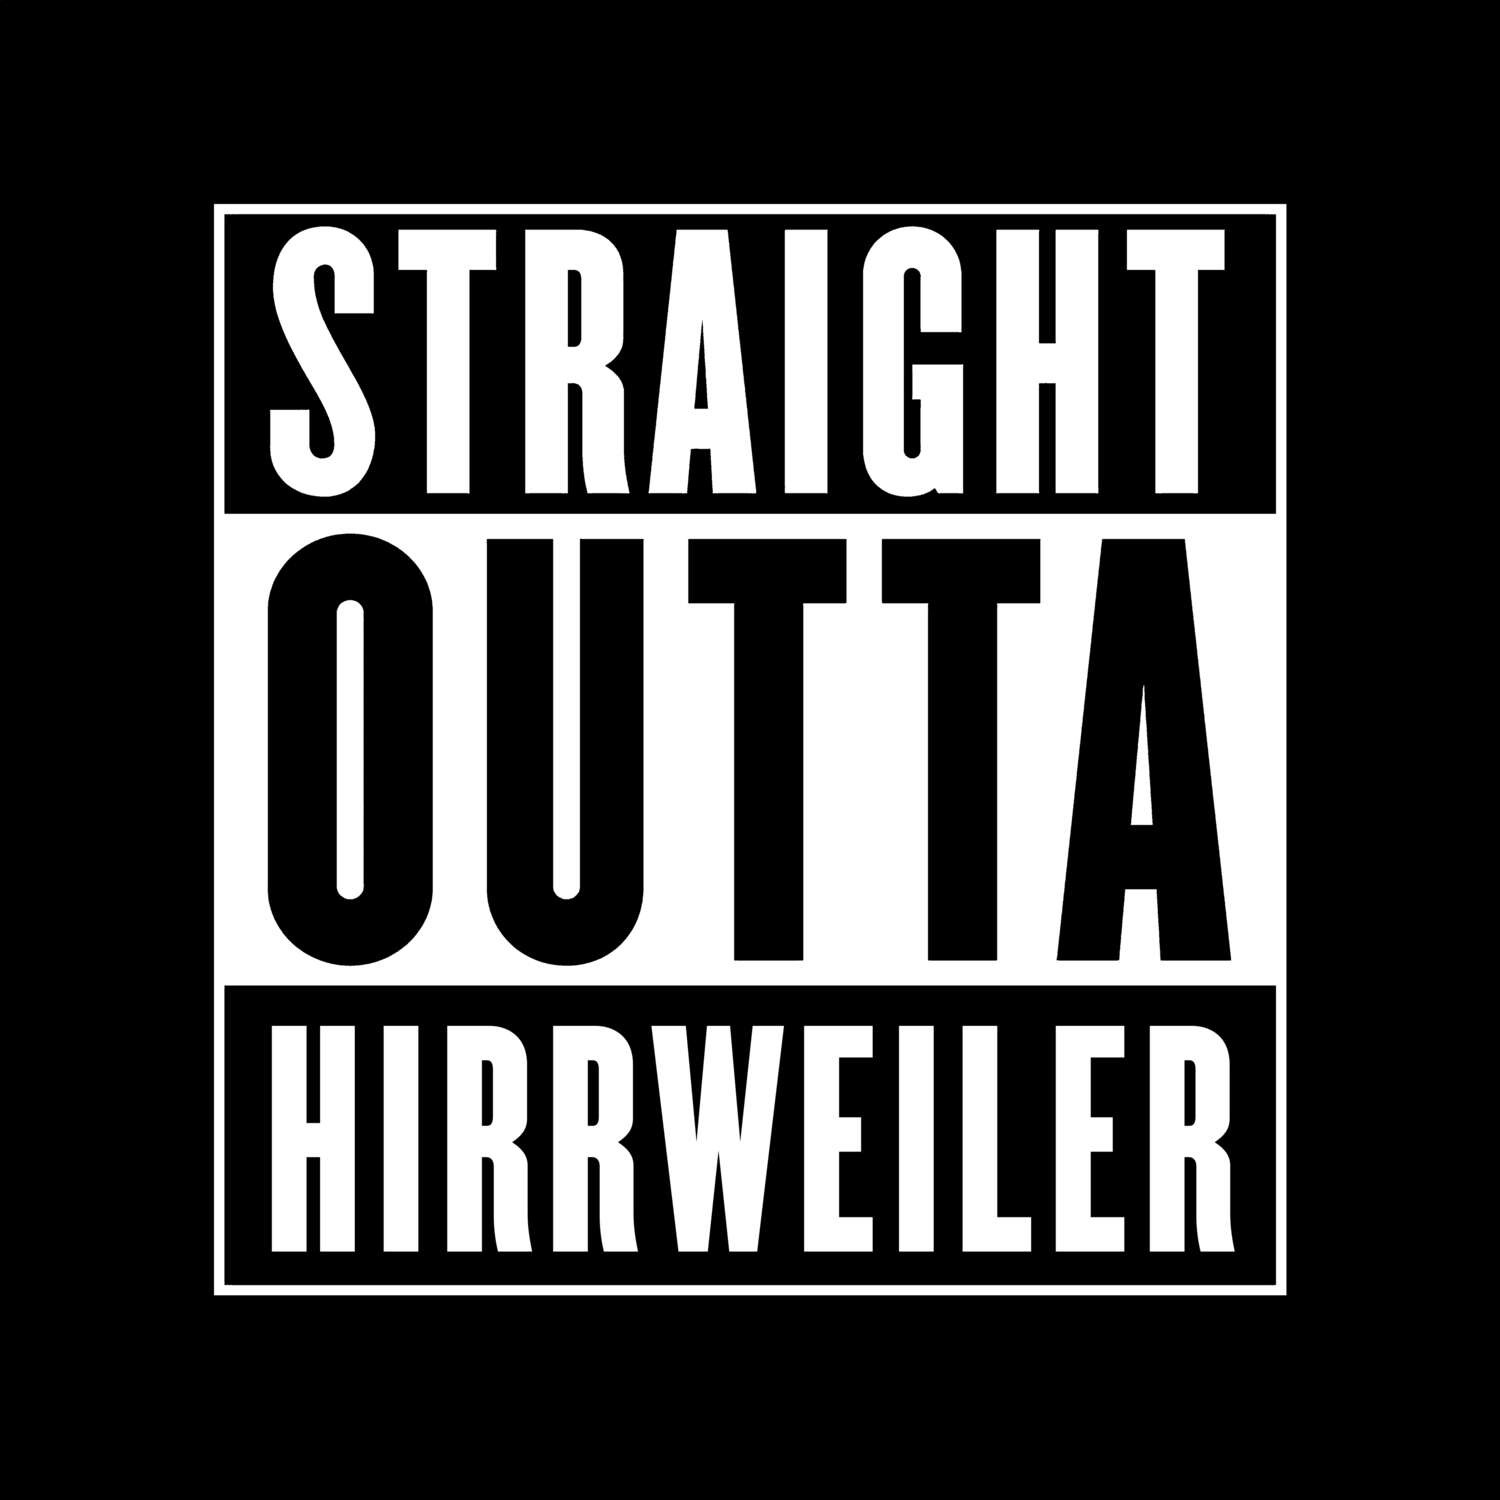 Hirrweiler T-Shirt »Straight Outta«